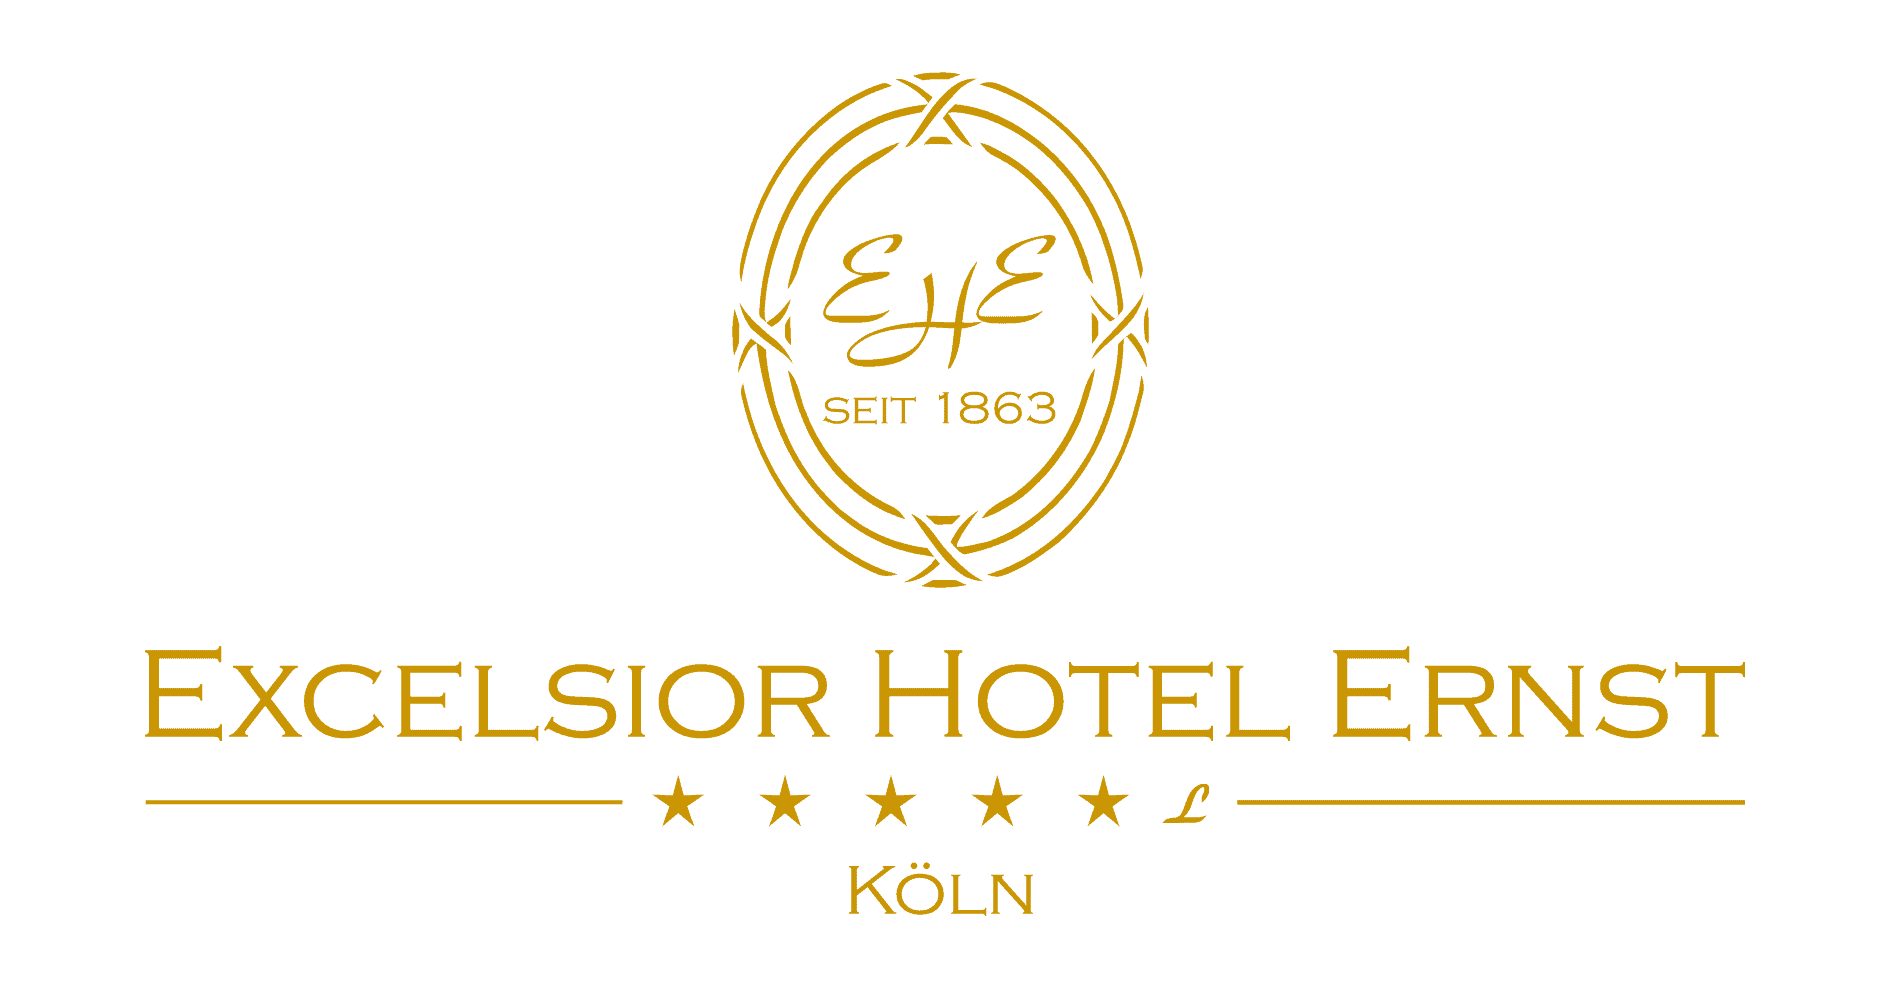 Logo Excelsior Hotel Ernst gold auf weißem Hintergrund